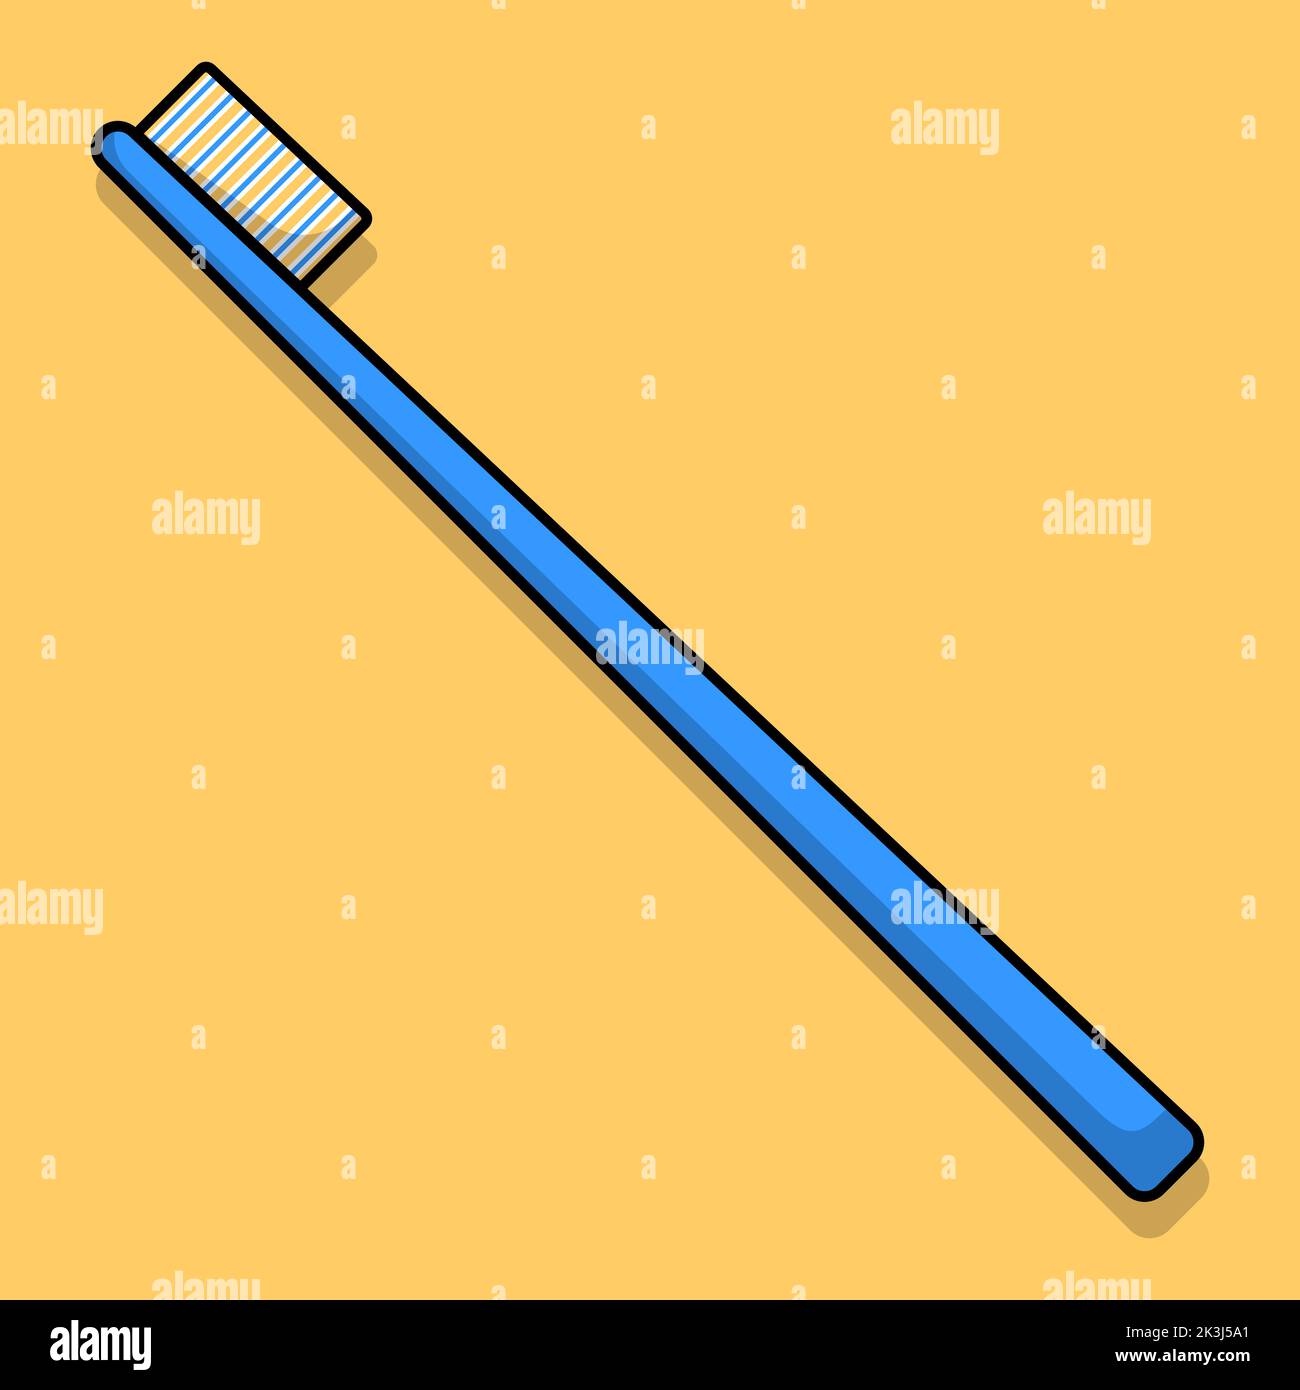 Cartoon flat illustration of a blue toothbrush. Vector illustration. Stock Vector